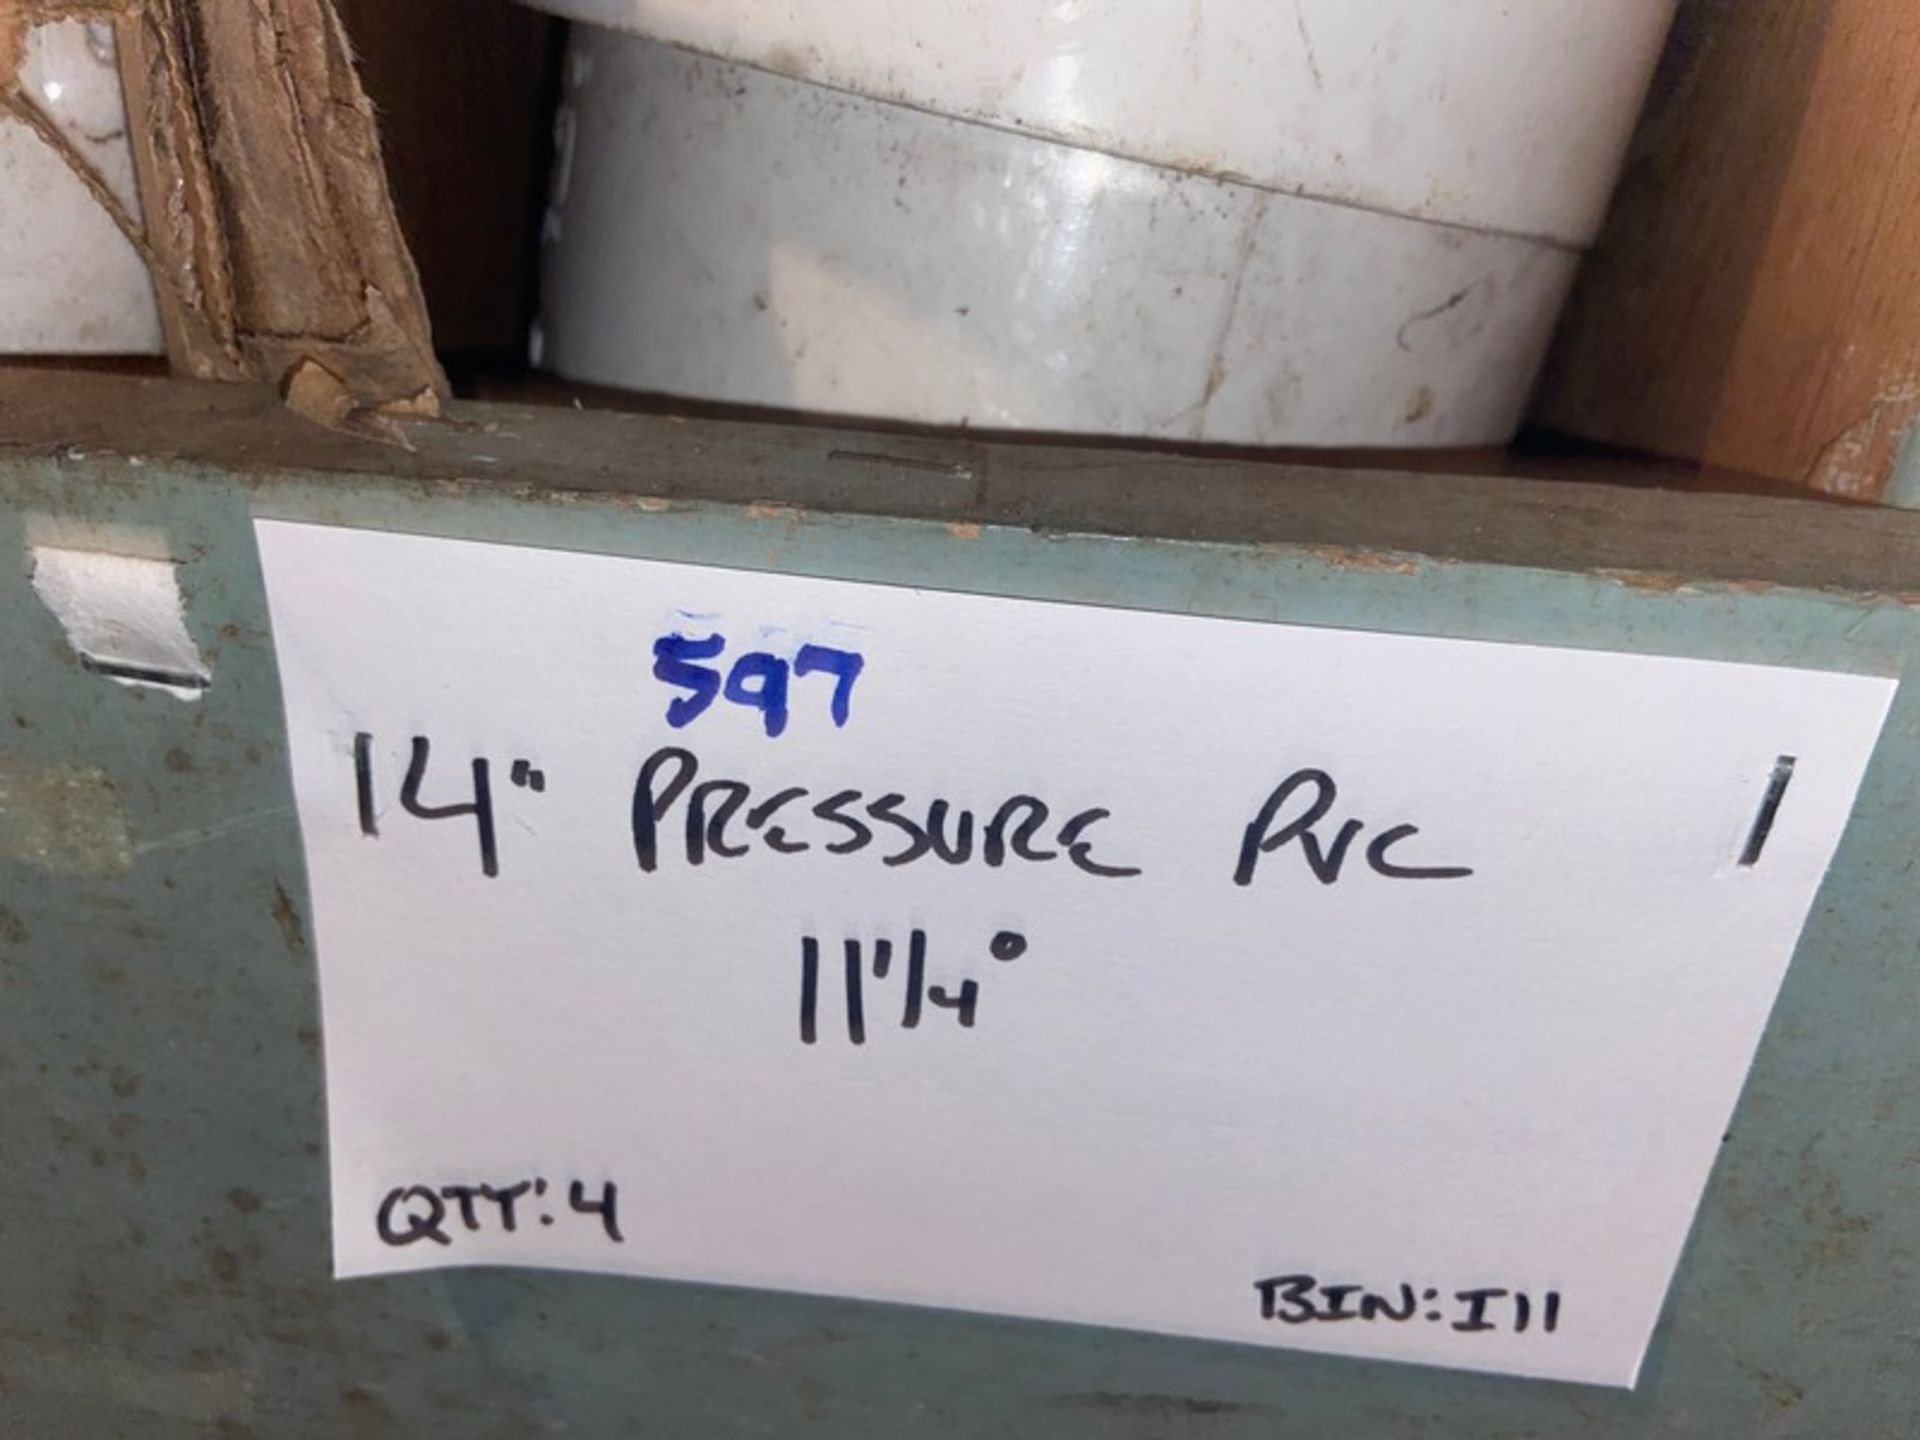 (6) 4” Pressure PVC 90’ (Bin:I11); Includes (4) 14” Pressure PVC 1 1/4” (Bin:I11)(LOCATED IN - Image 3 of 4